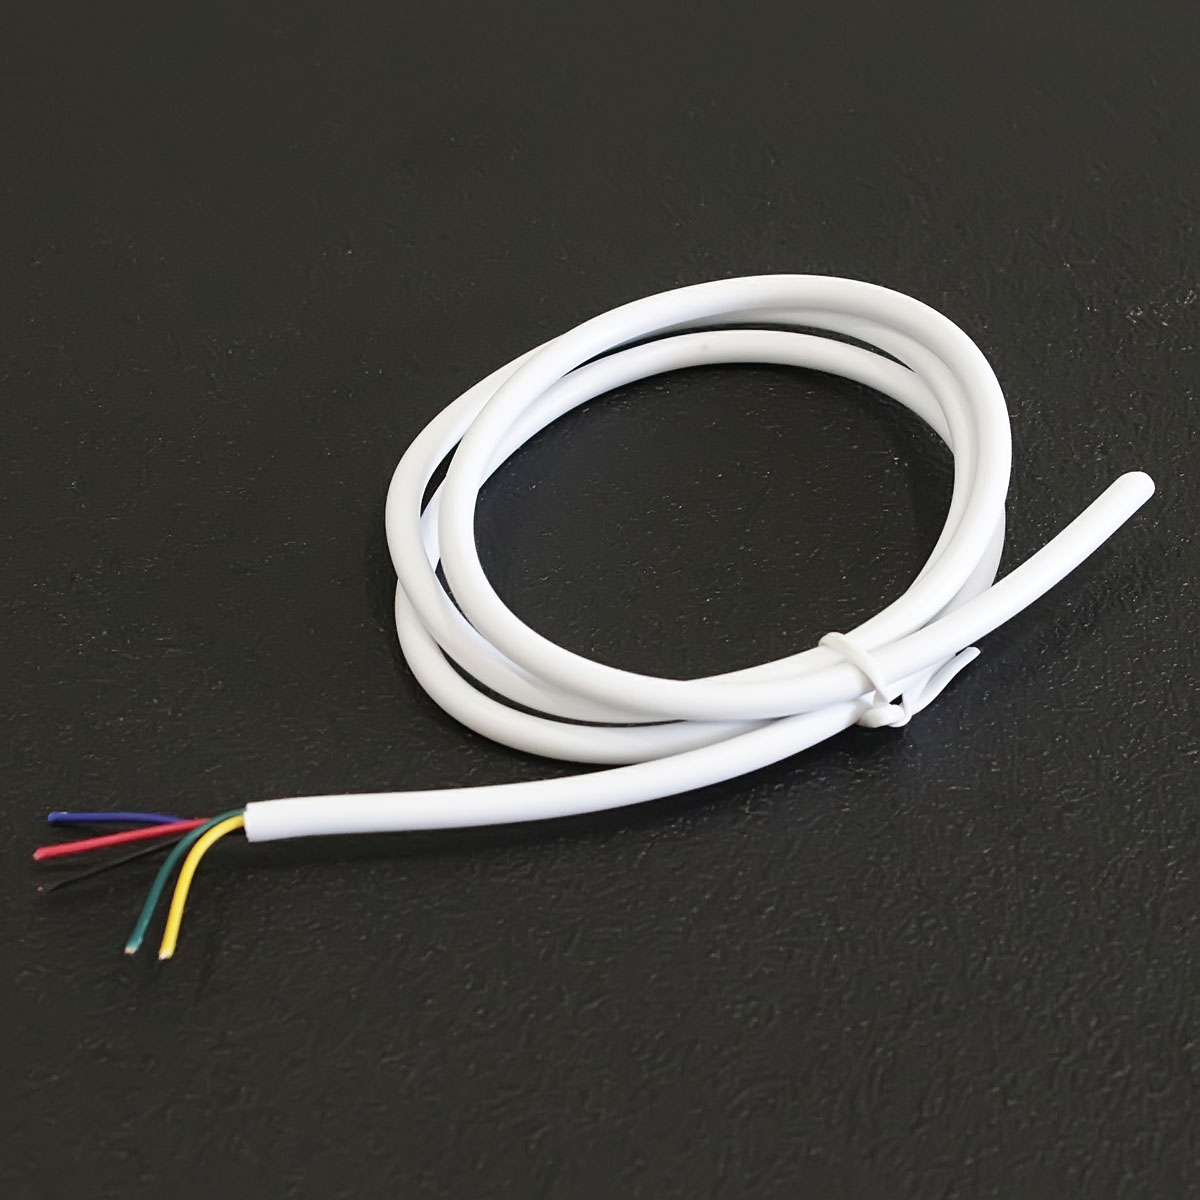 RGBW Verlängerung 2 Meter Plug & Play; Anschlusskabel für RGB+W LED Streifen 